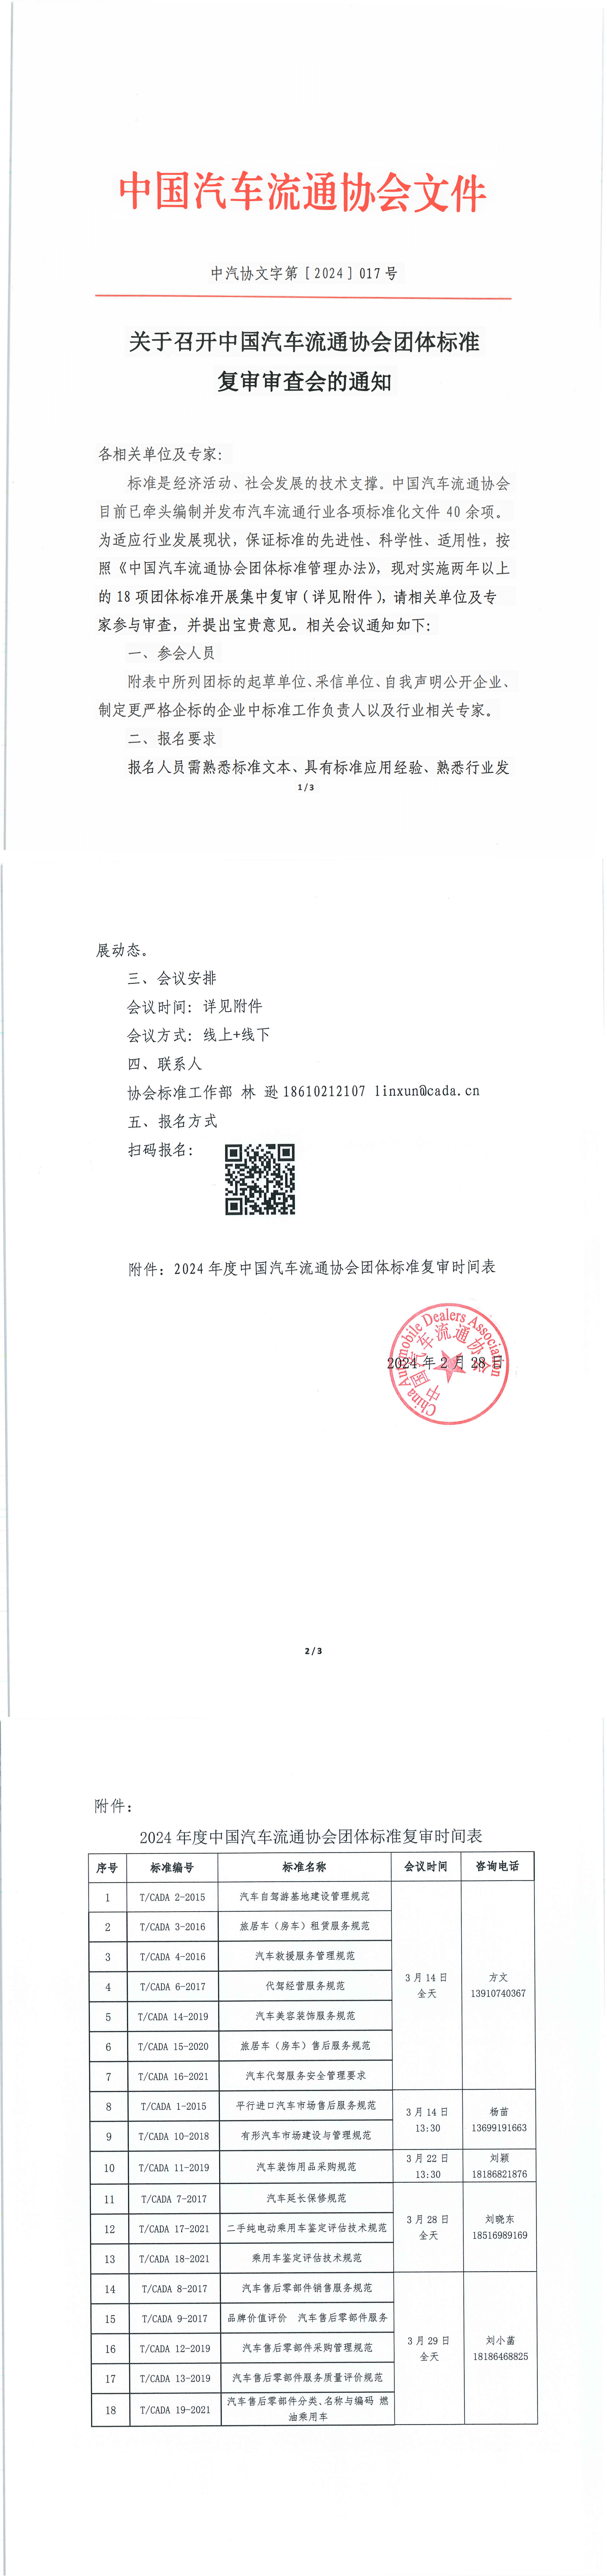 关于召开中国汽车流通协会团体标准复审审查会的通知_00.png